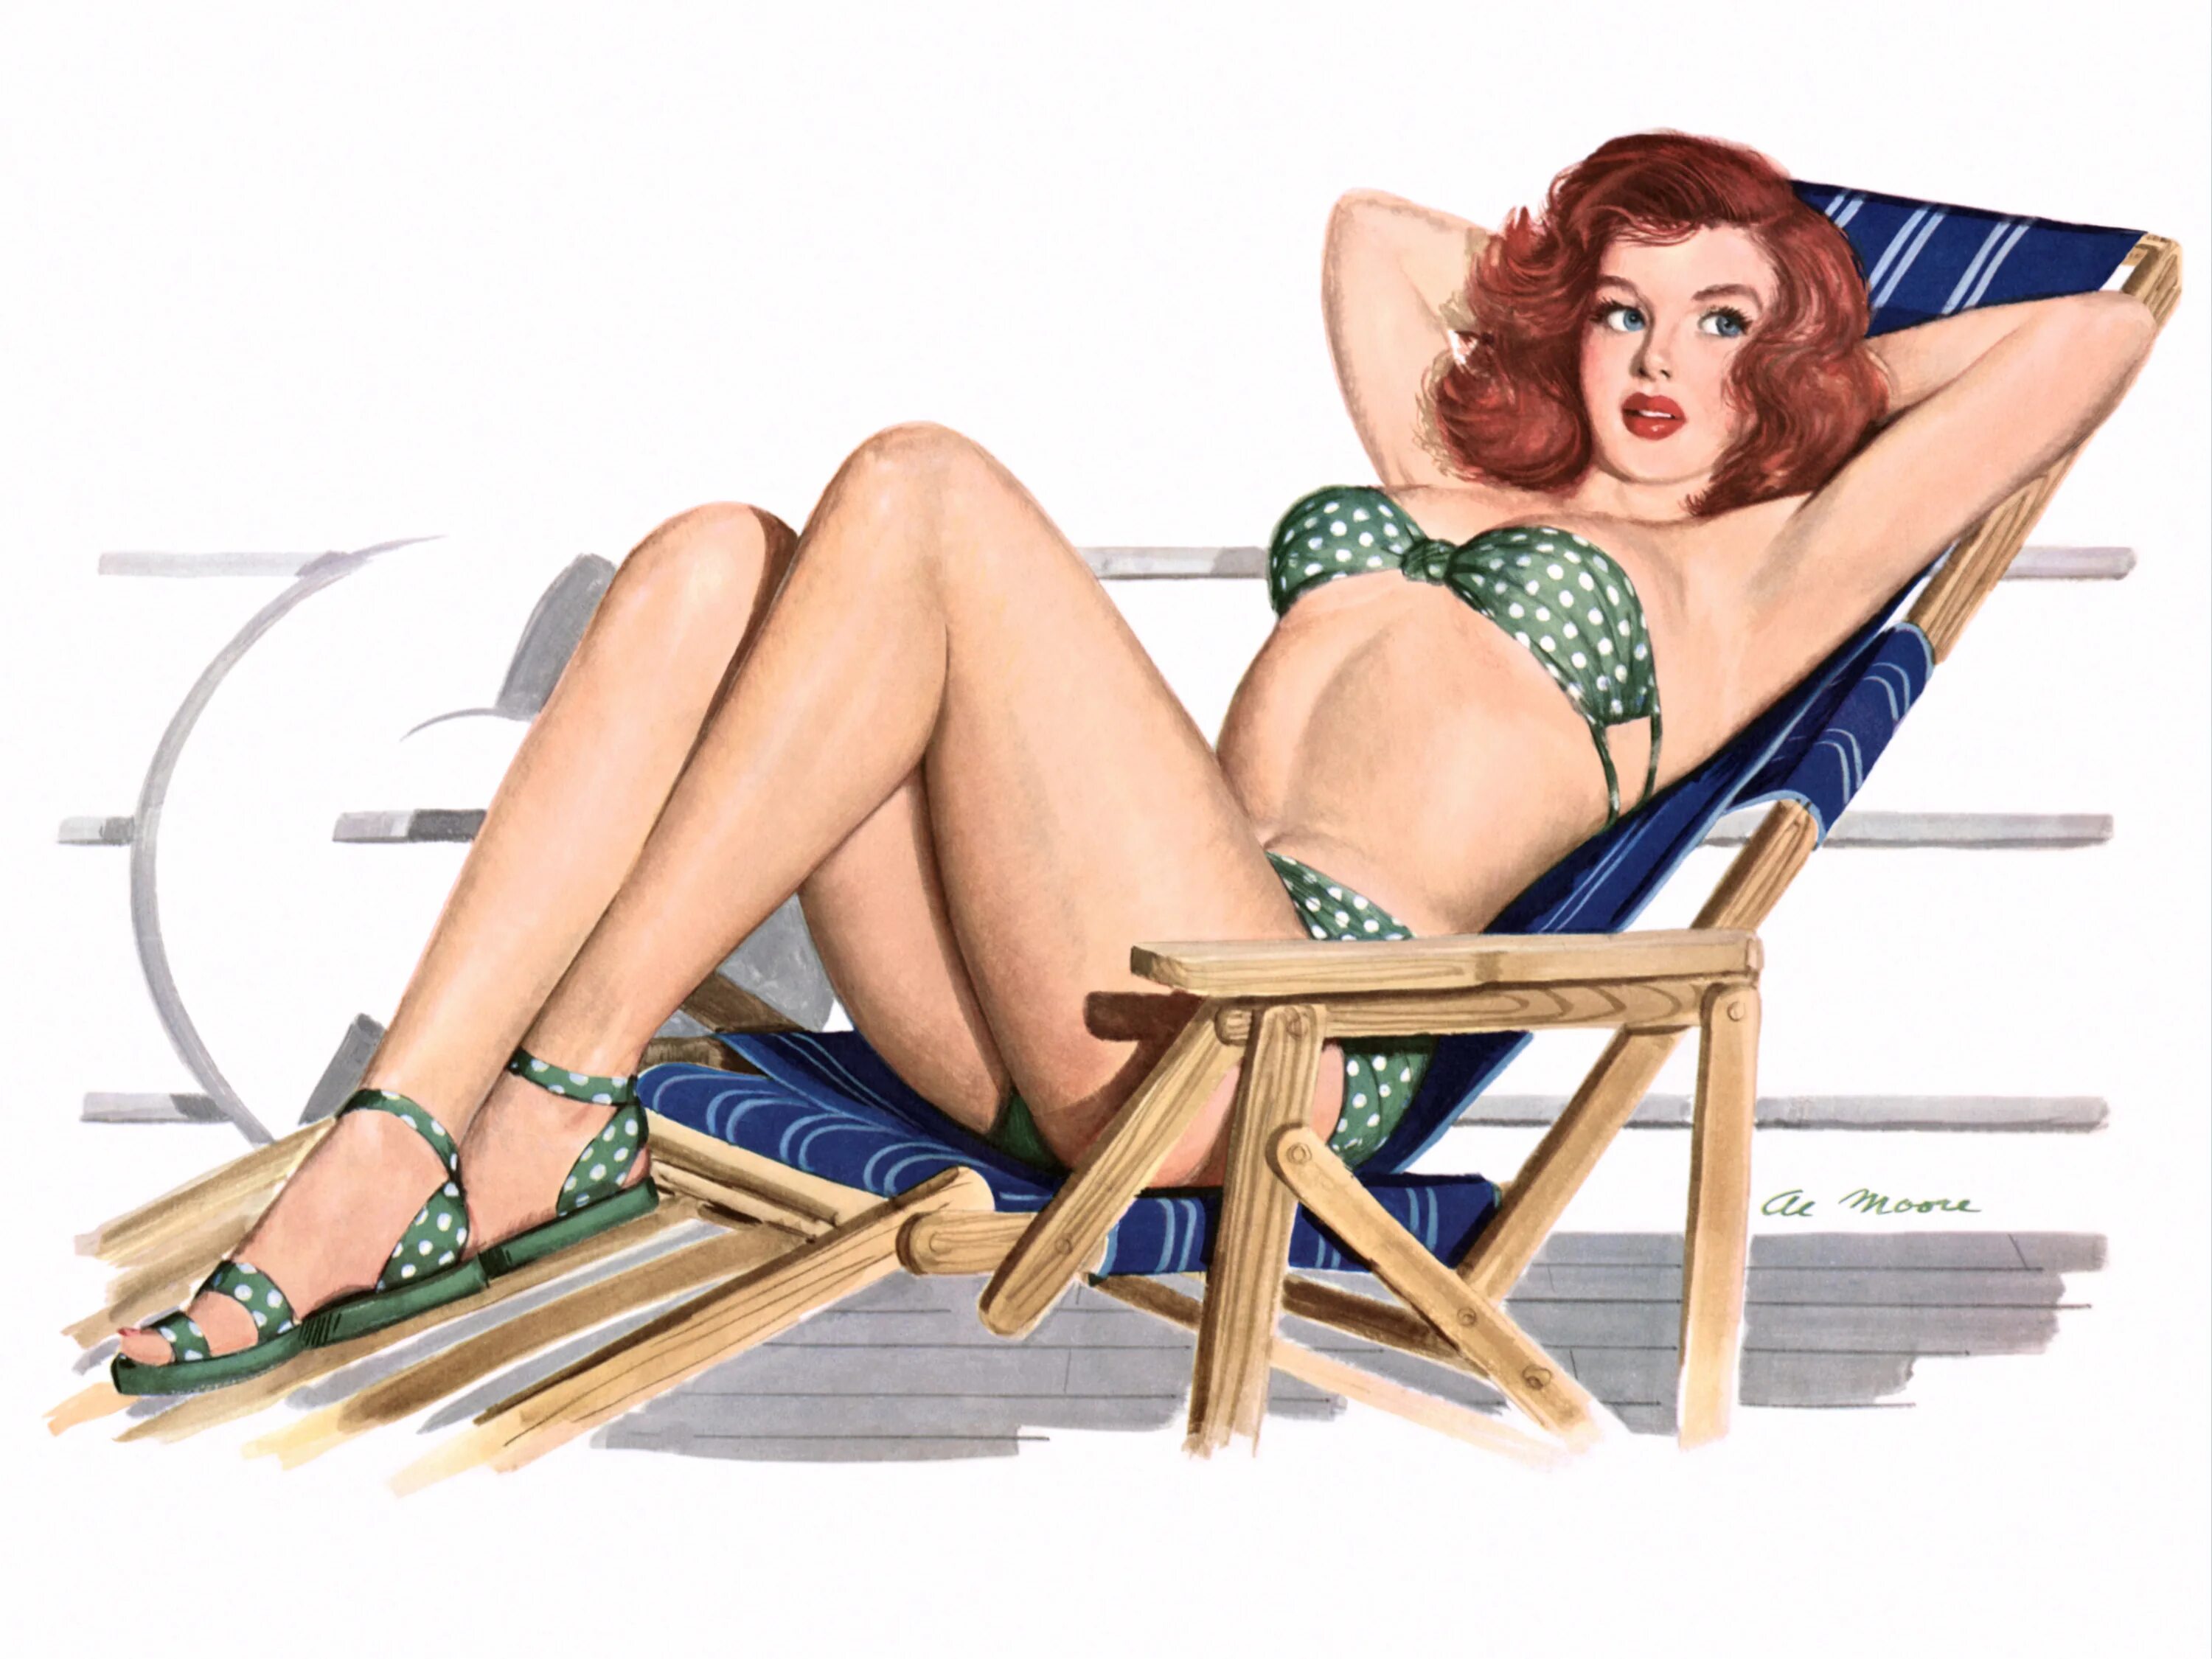 Рисунки в стиле пин ап. Постеры в стиле 50-х годов. Американские плакаты с девушками. Пин ап девушки. Пин ап pin up bookmaker site